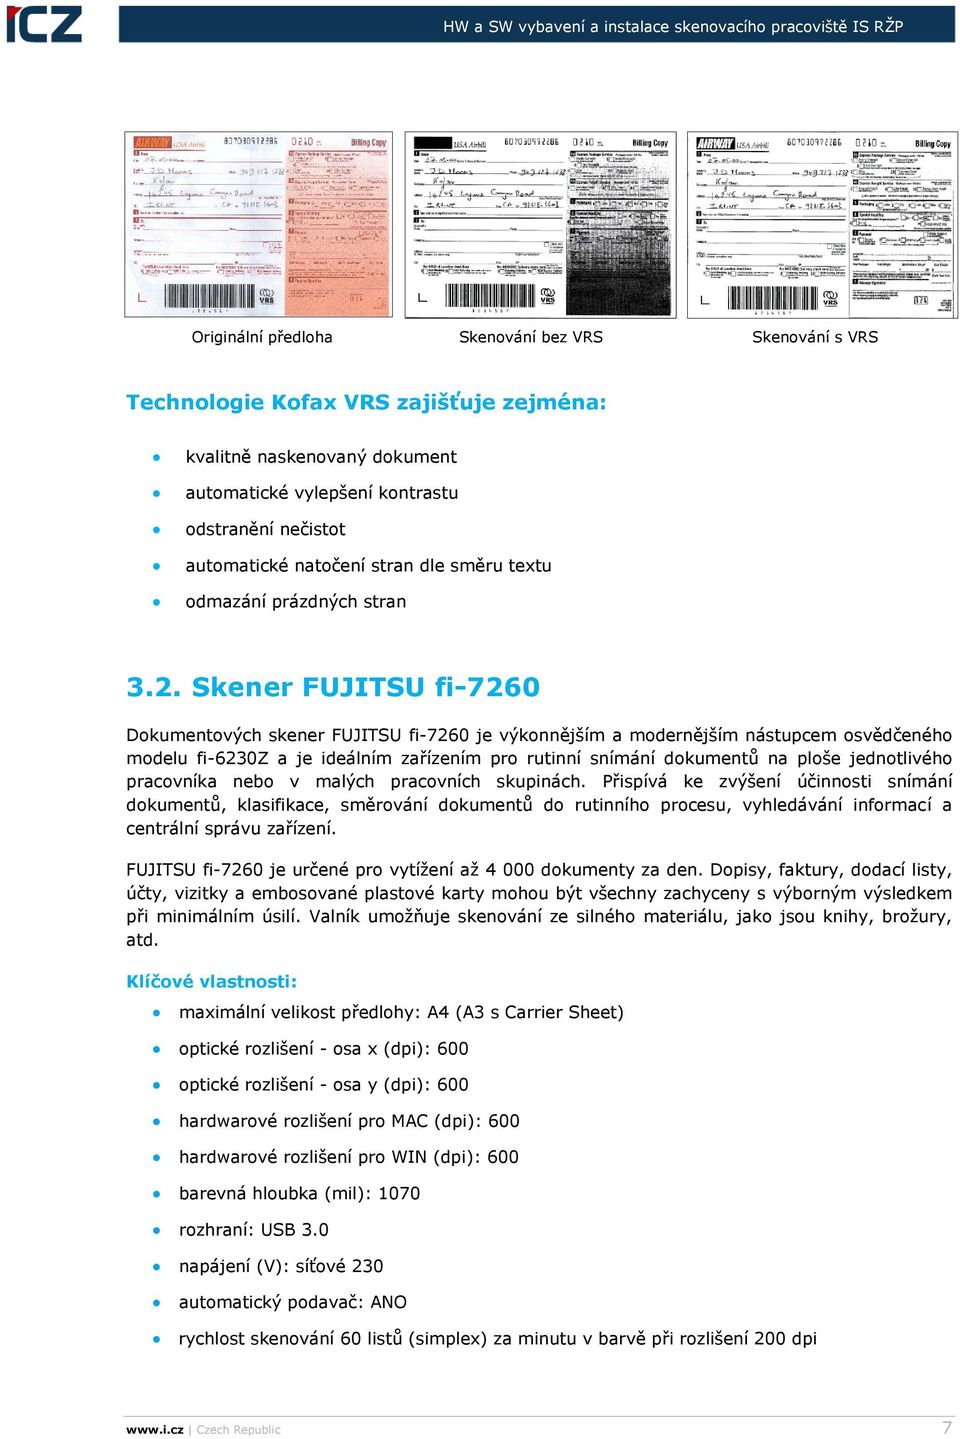 Skener FUJITSU fi-7260 Dokumentových skener FUJITSU fi-7260 je výkonnějším a modernějším nástupcem osvědčeného modelu fi-6230z a je ideálním zařízením pro rutinní snímání dokumentů na ploše